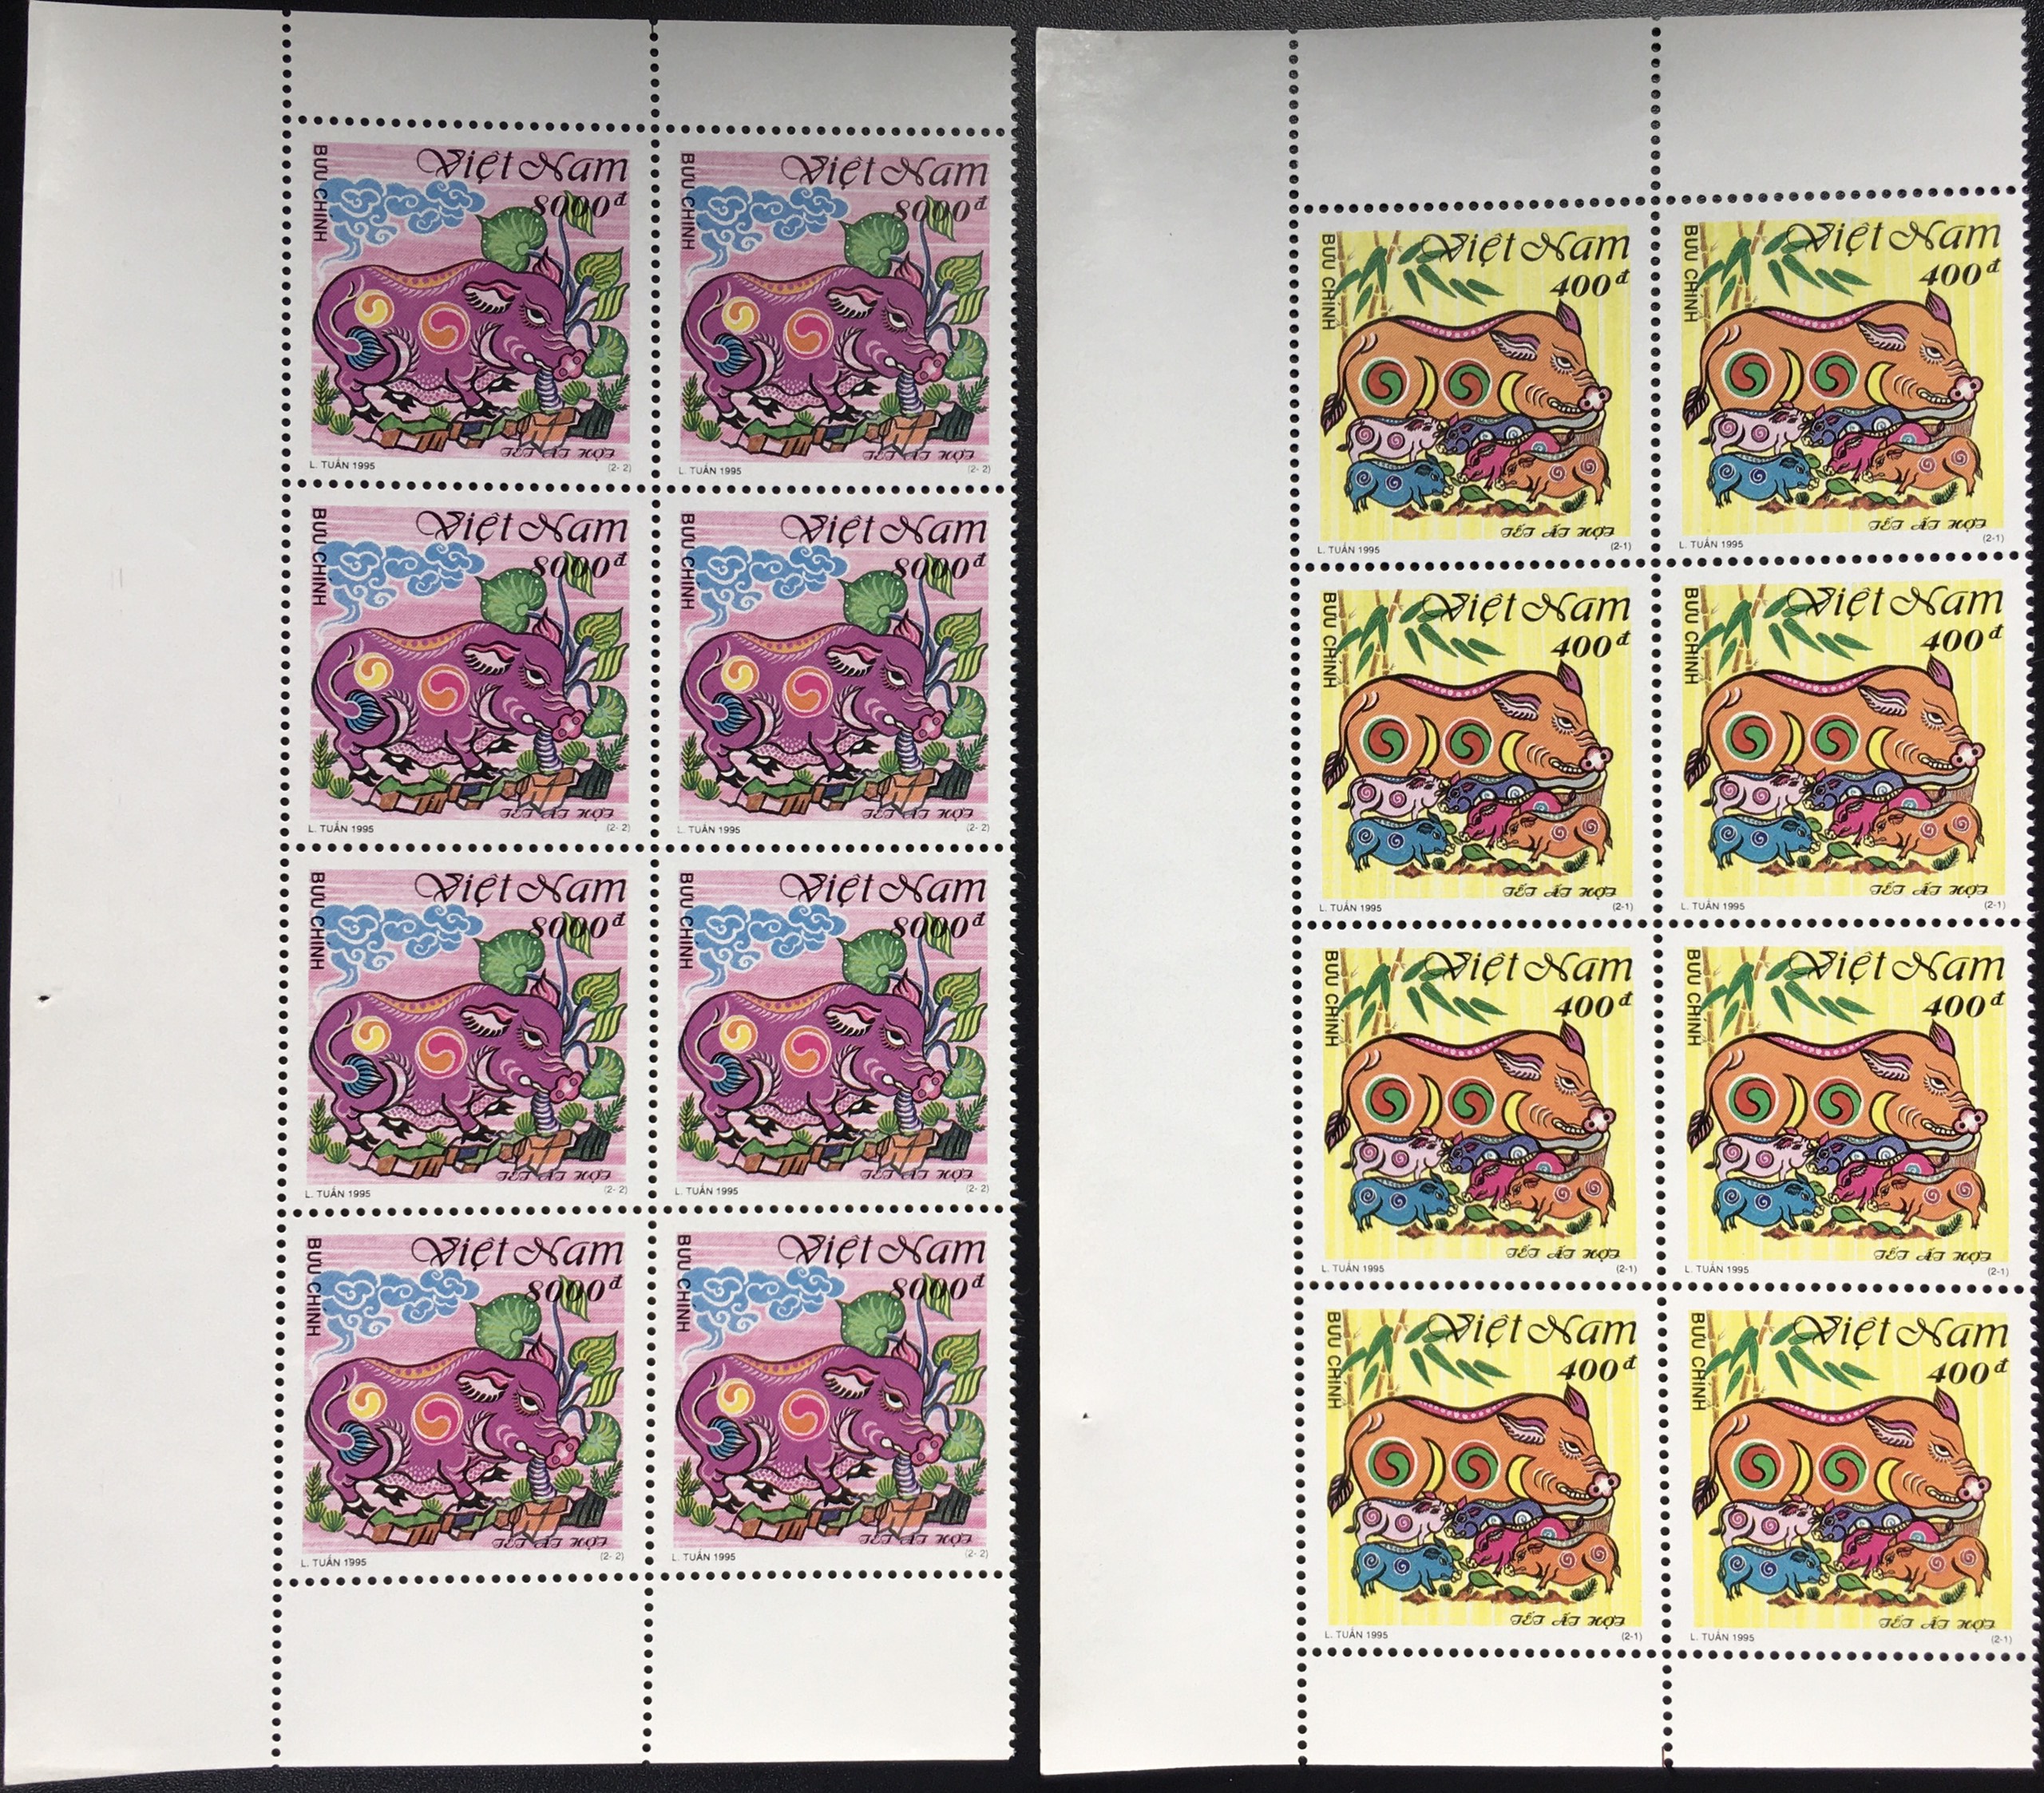 Bộ Tem Sưu Tầm Việt Nam Chủ Đề Tết Ất Hợi 1995 - 2 Con Stamp